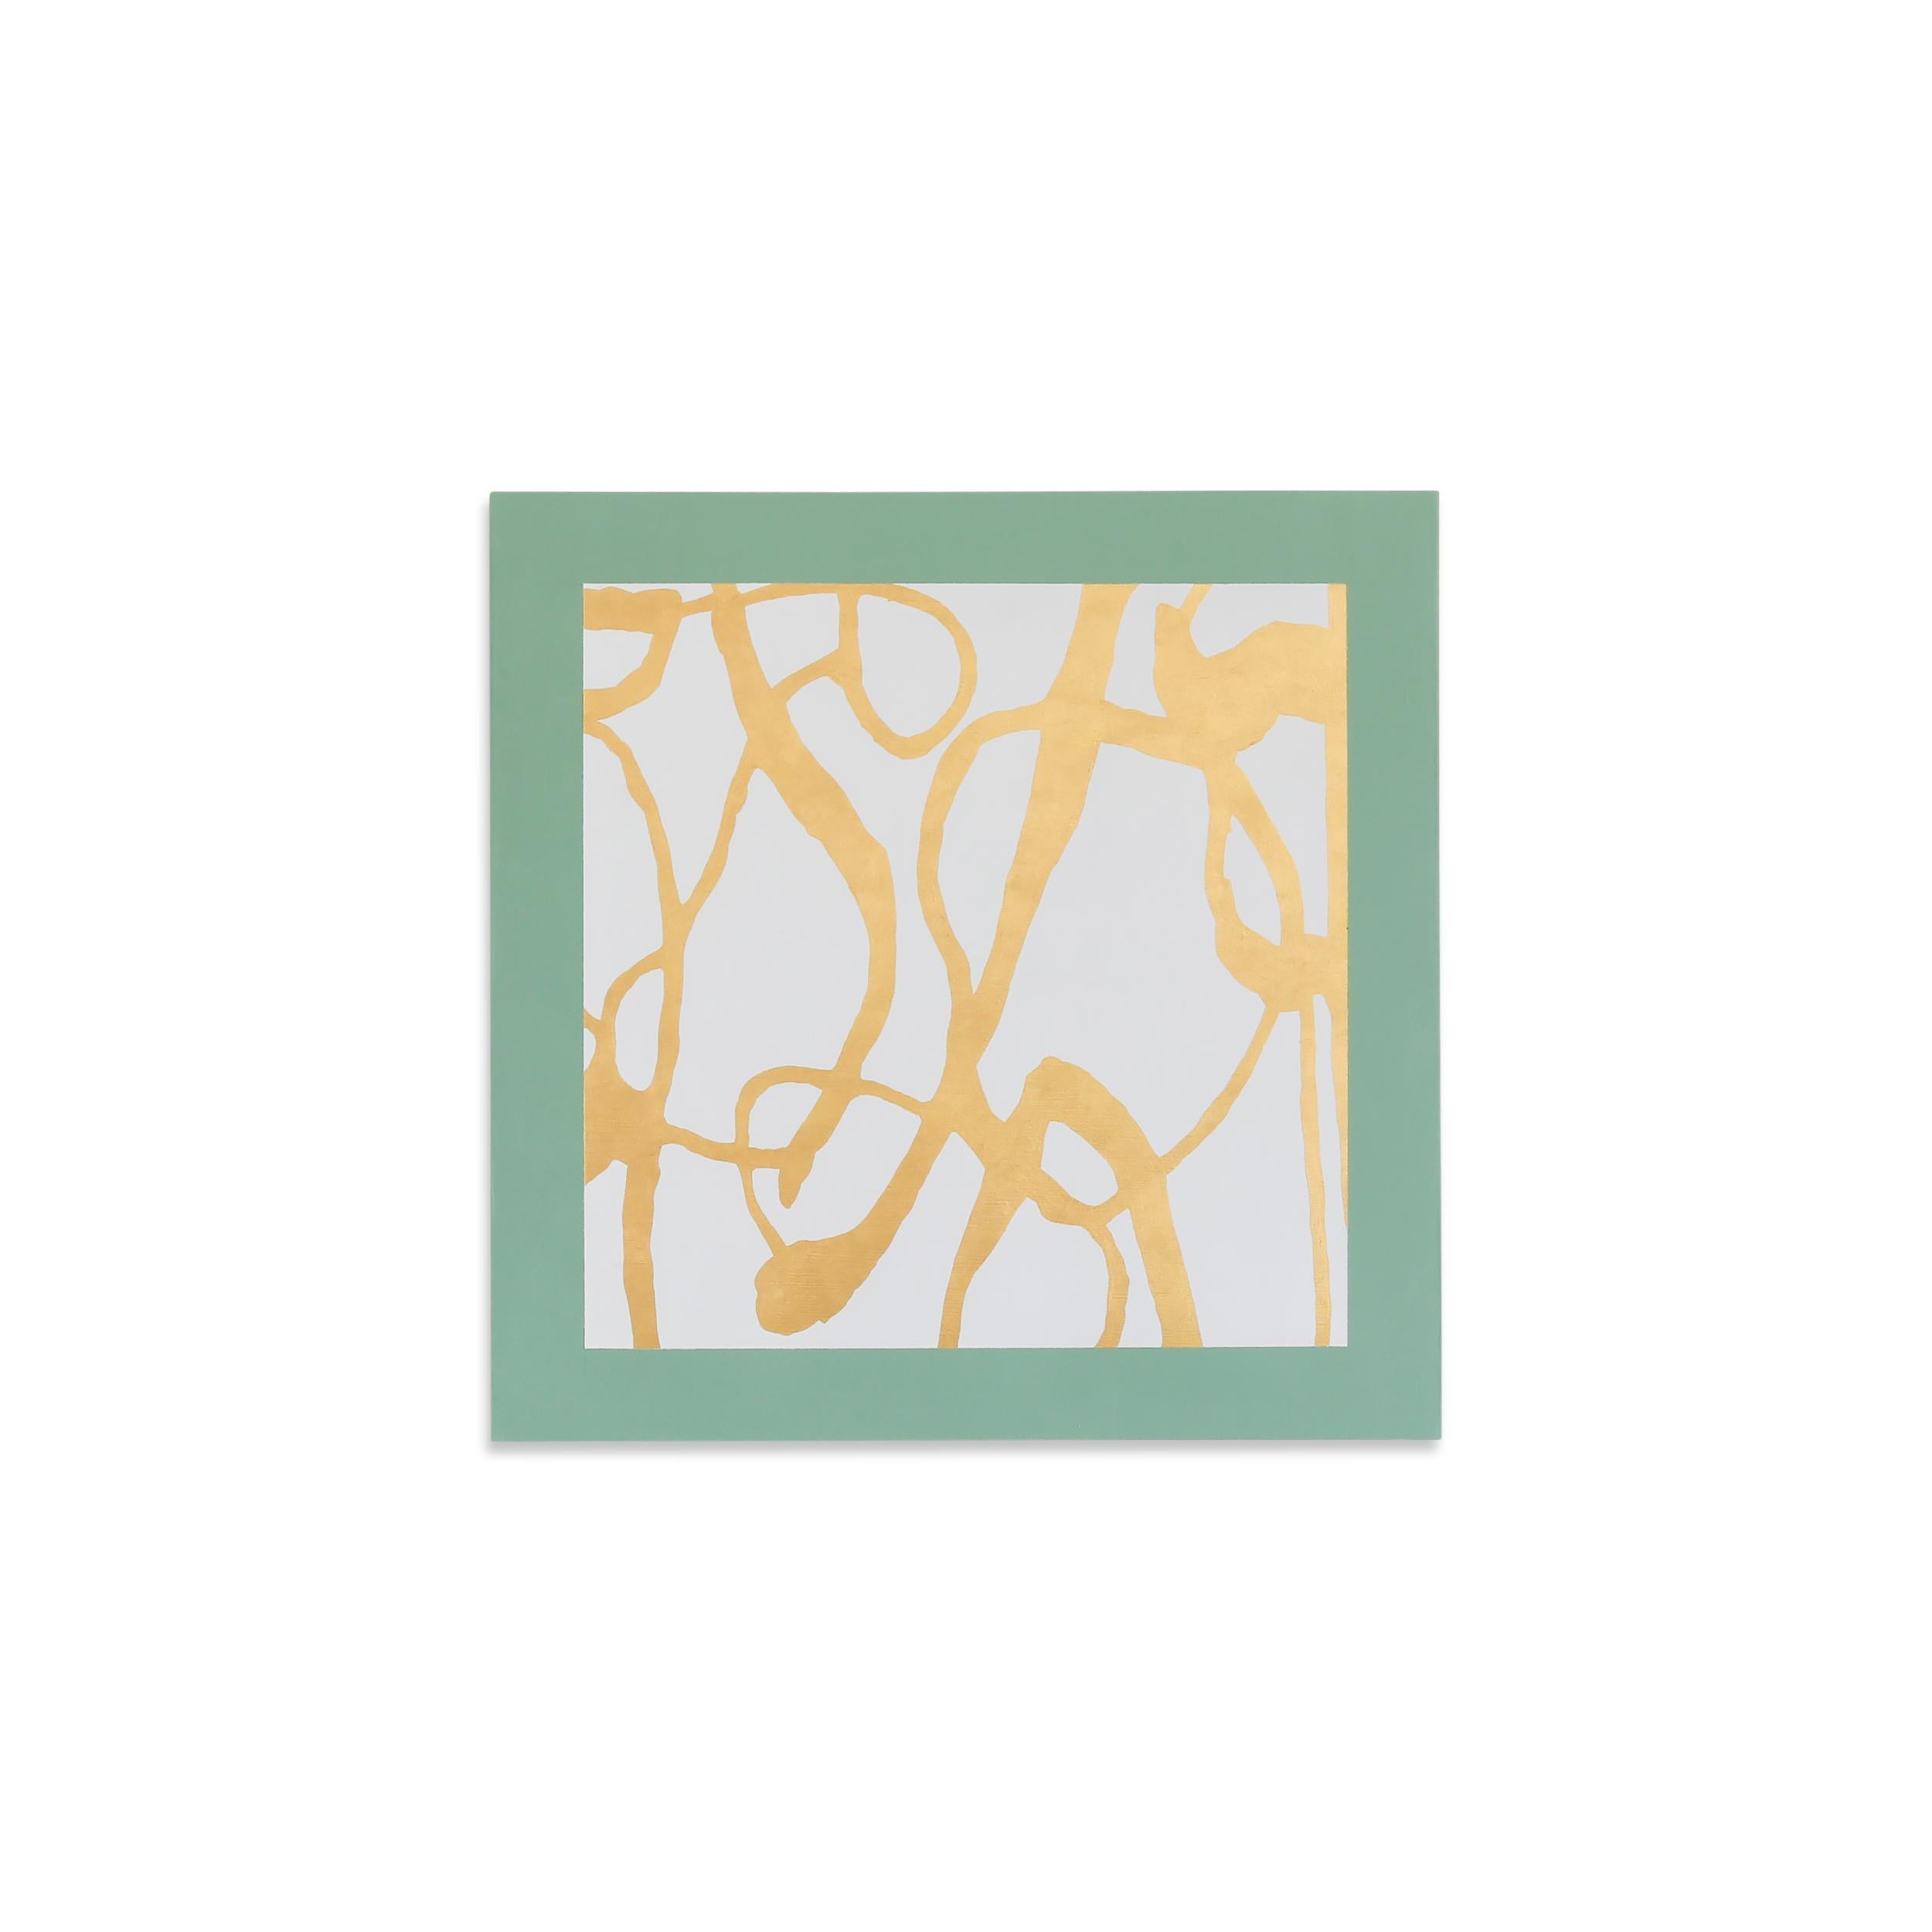 Southfield - Vert avec feuille d'or pur 24 carats - Mixed Media Art de Jessica Feldheim